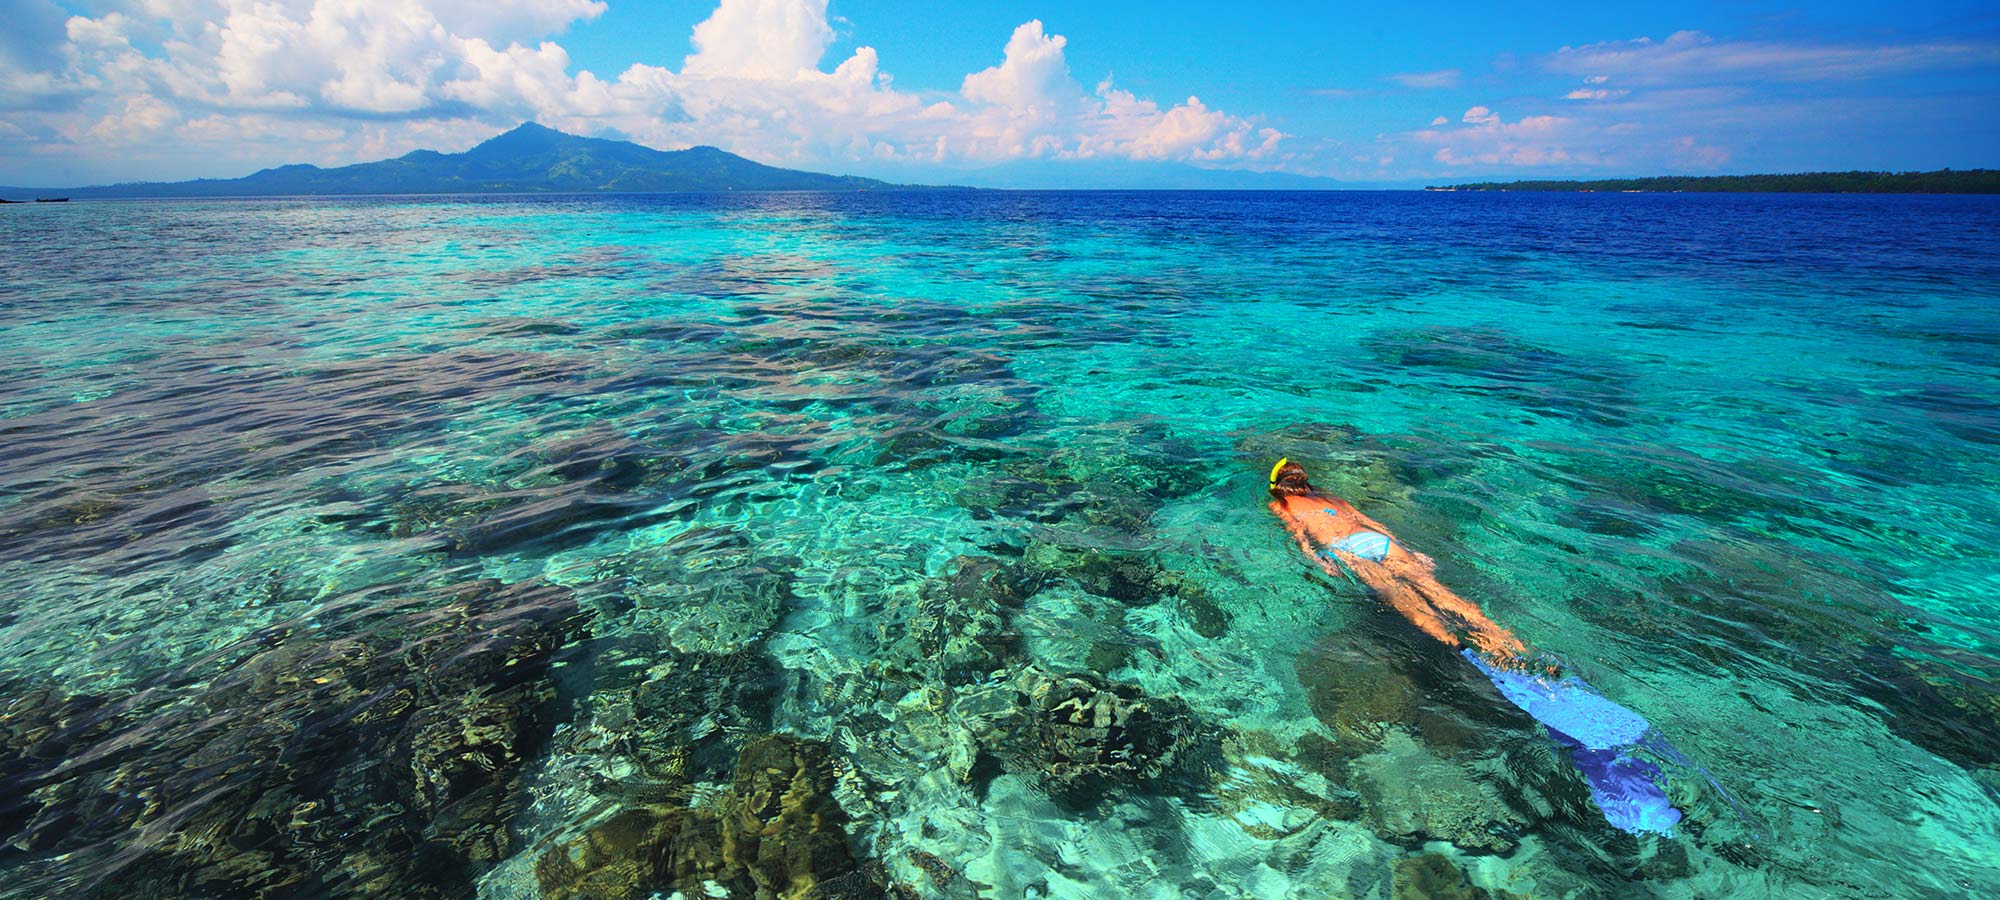 10 Best Island Reefs around the World